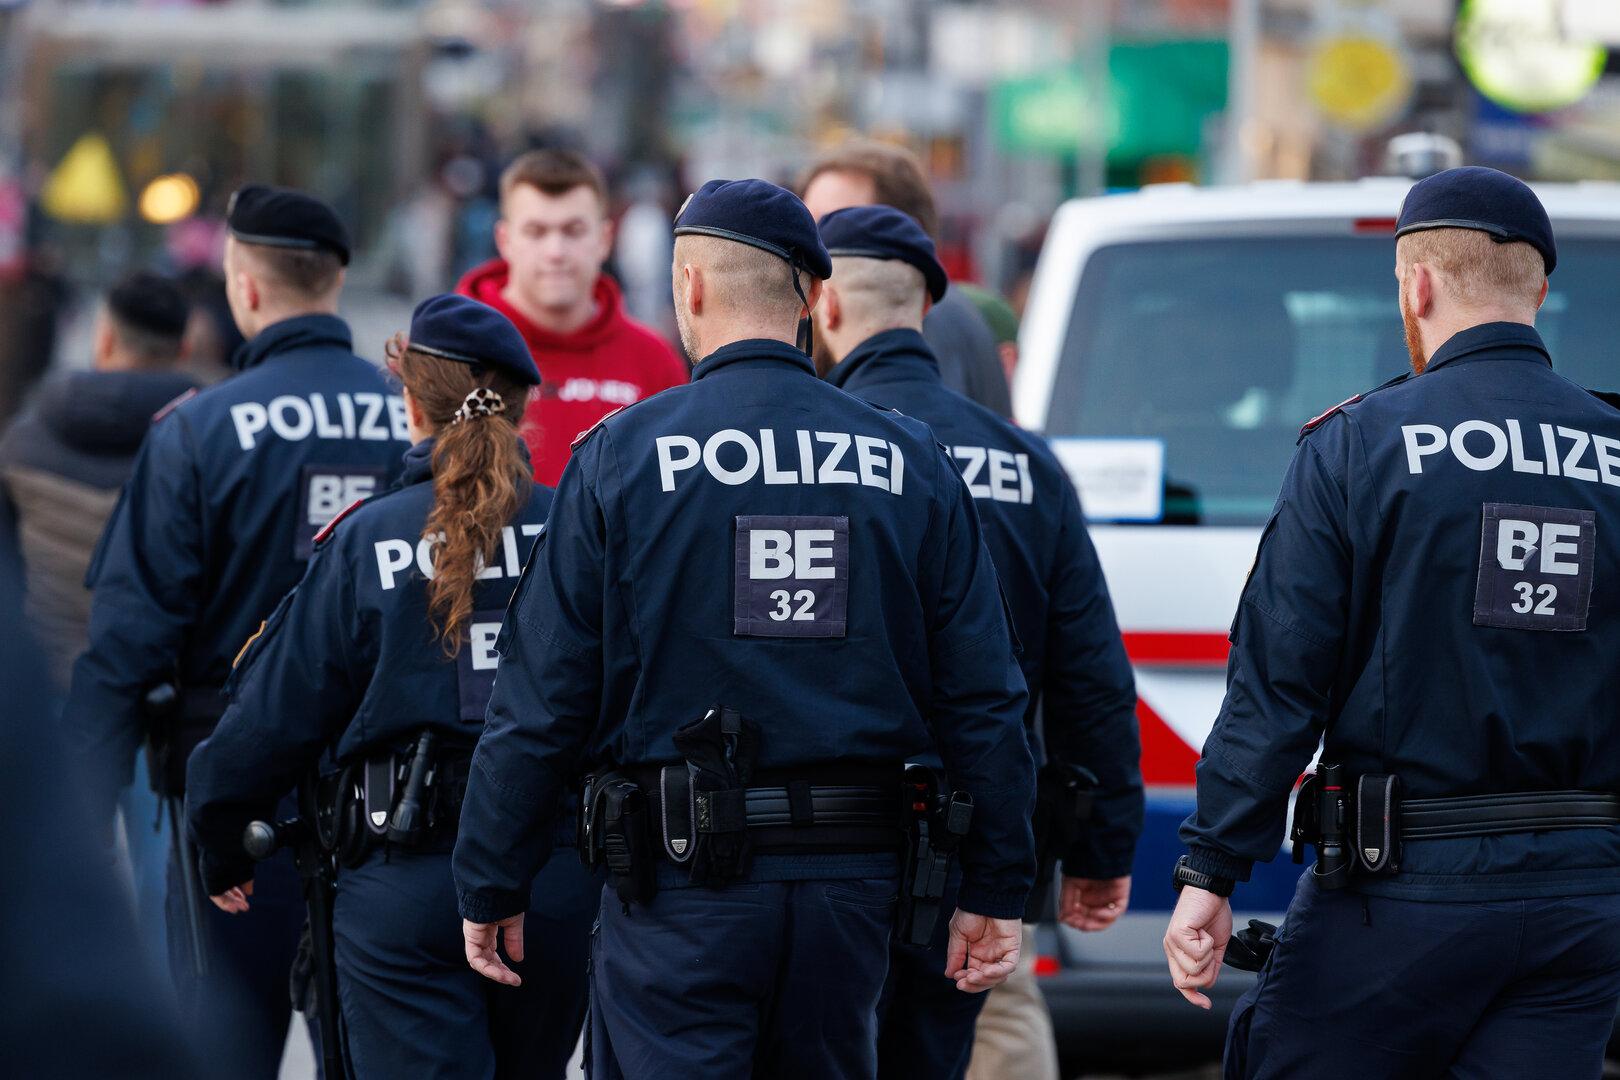 Wien-Favoriten: Messerstich auf Polizisten